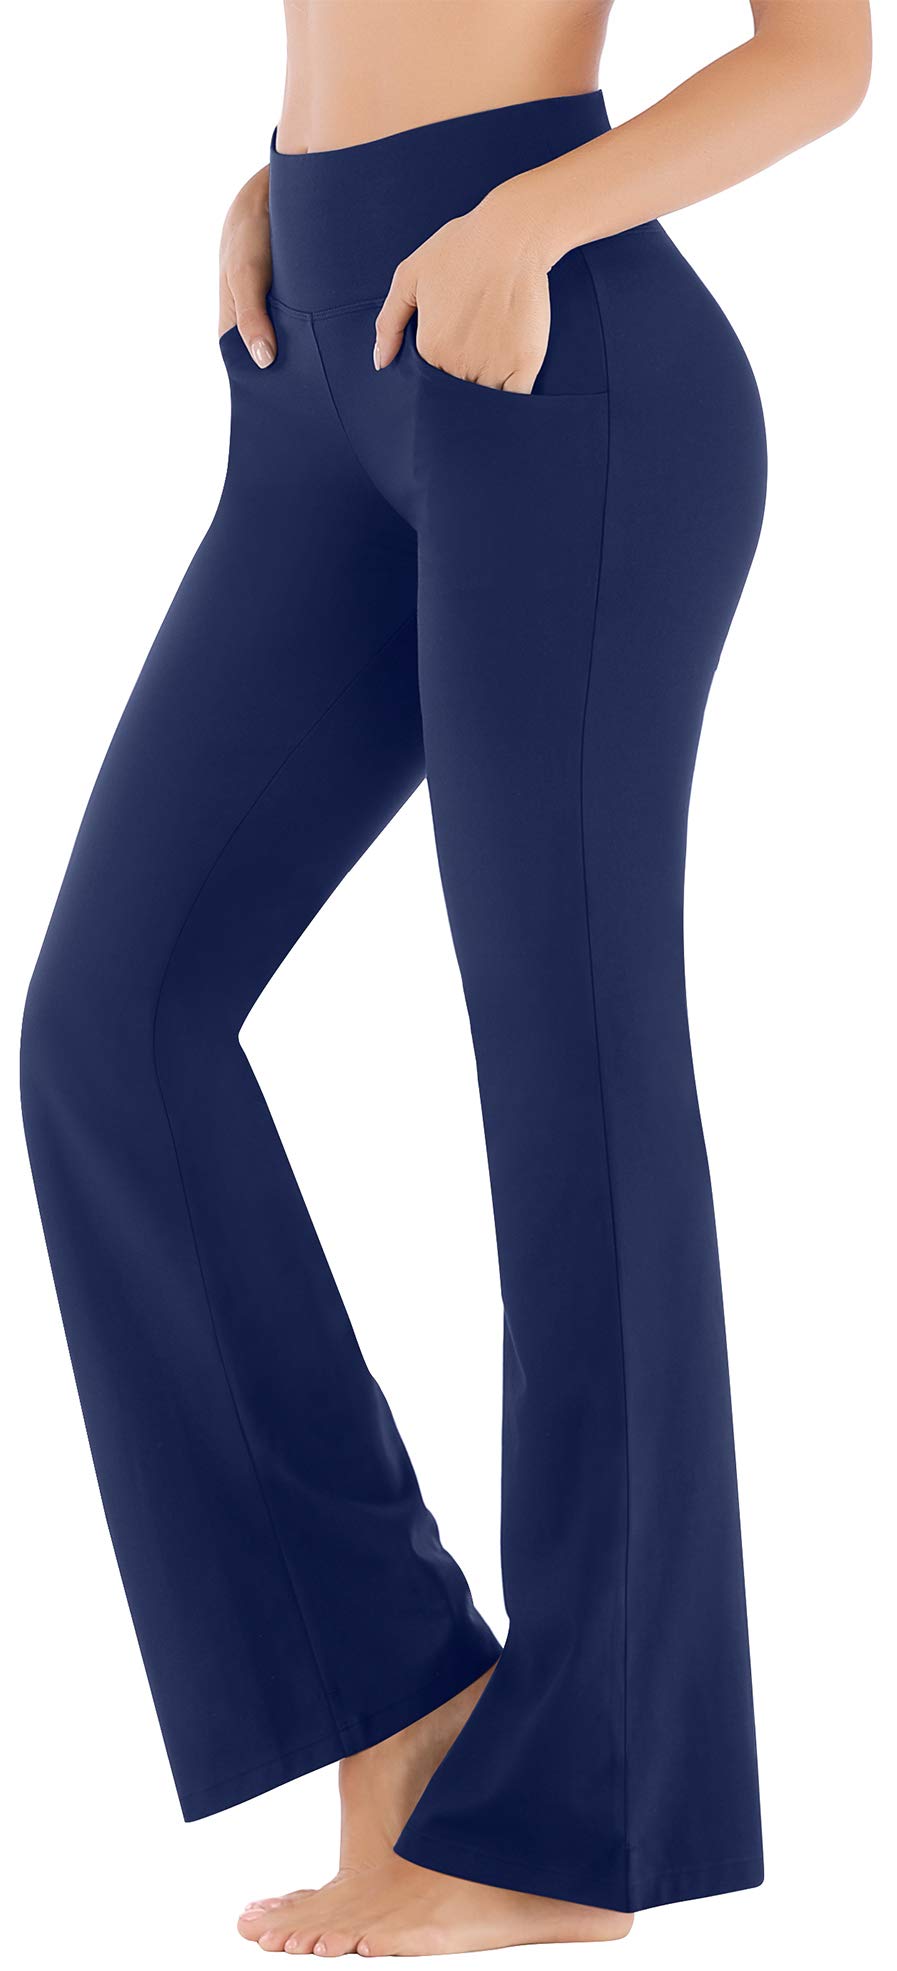 Buy Ewedoos Bootcut Yoga Pants for Women High Waisted Yoga Pants with Pockets  for Women Bootleg Work Pants Workout Pants